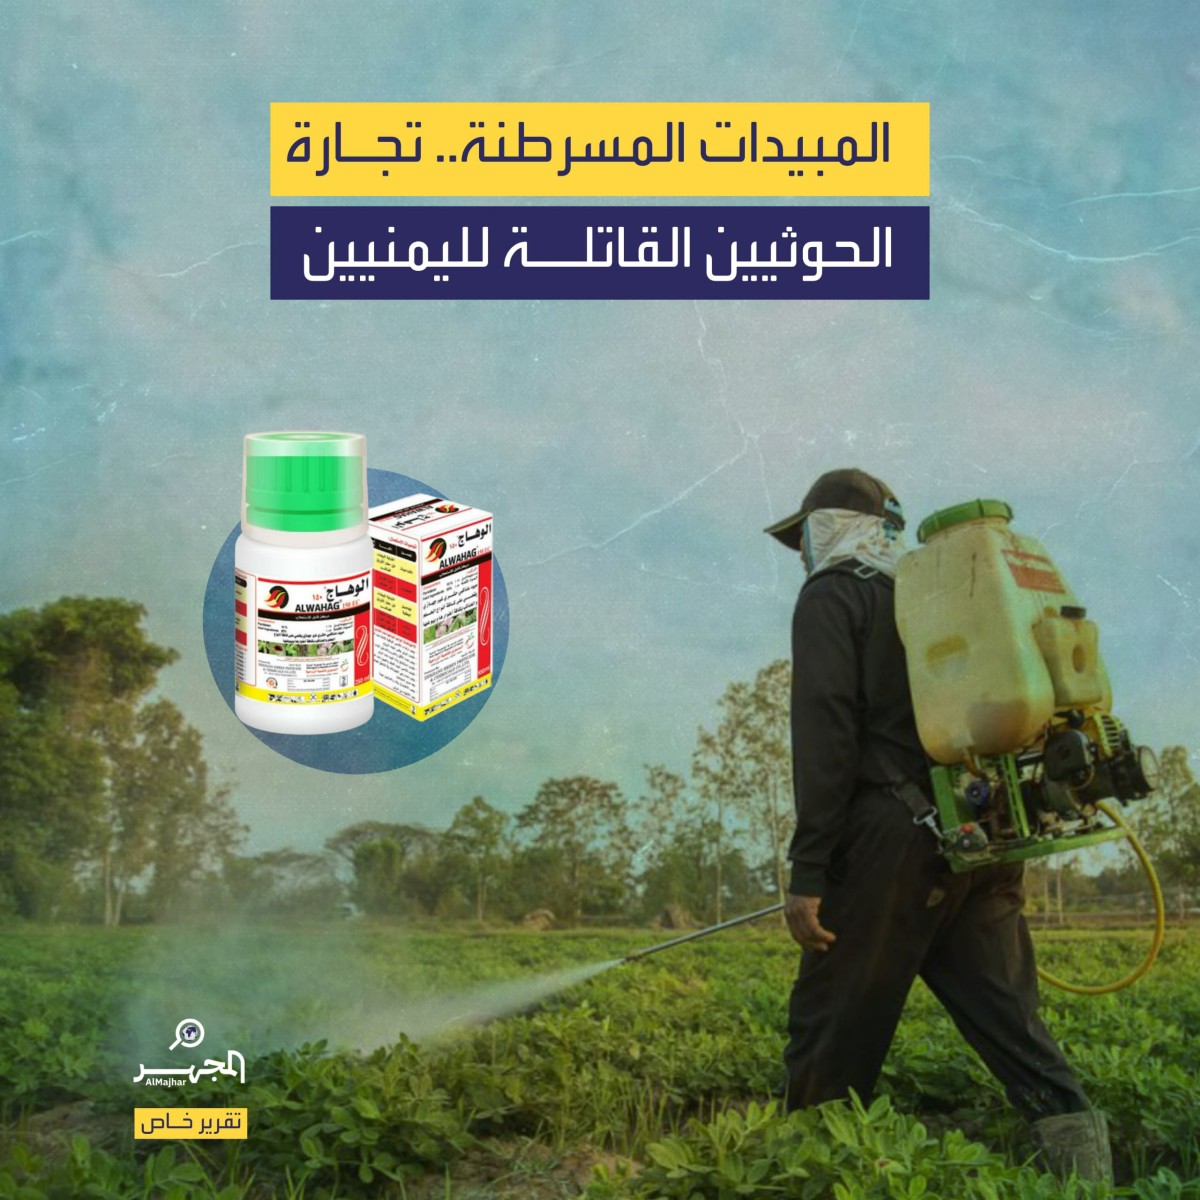 المبيدات المسرطنة.. تجارة الحوثيين القاتلة لليمنيين (تقرير خاص)